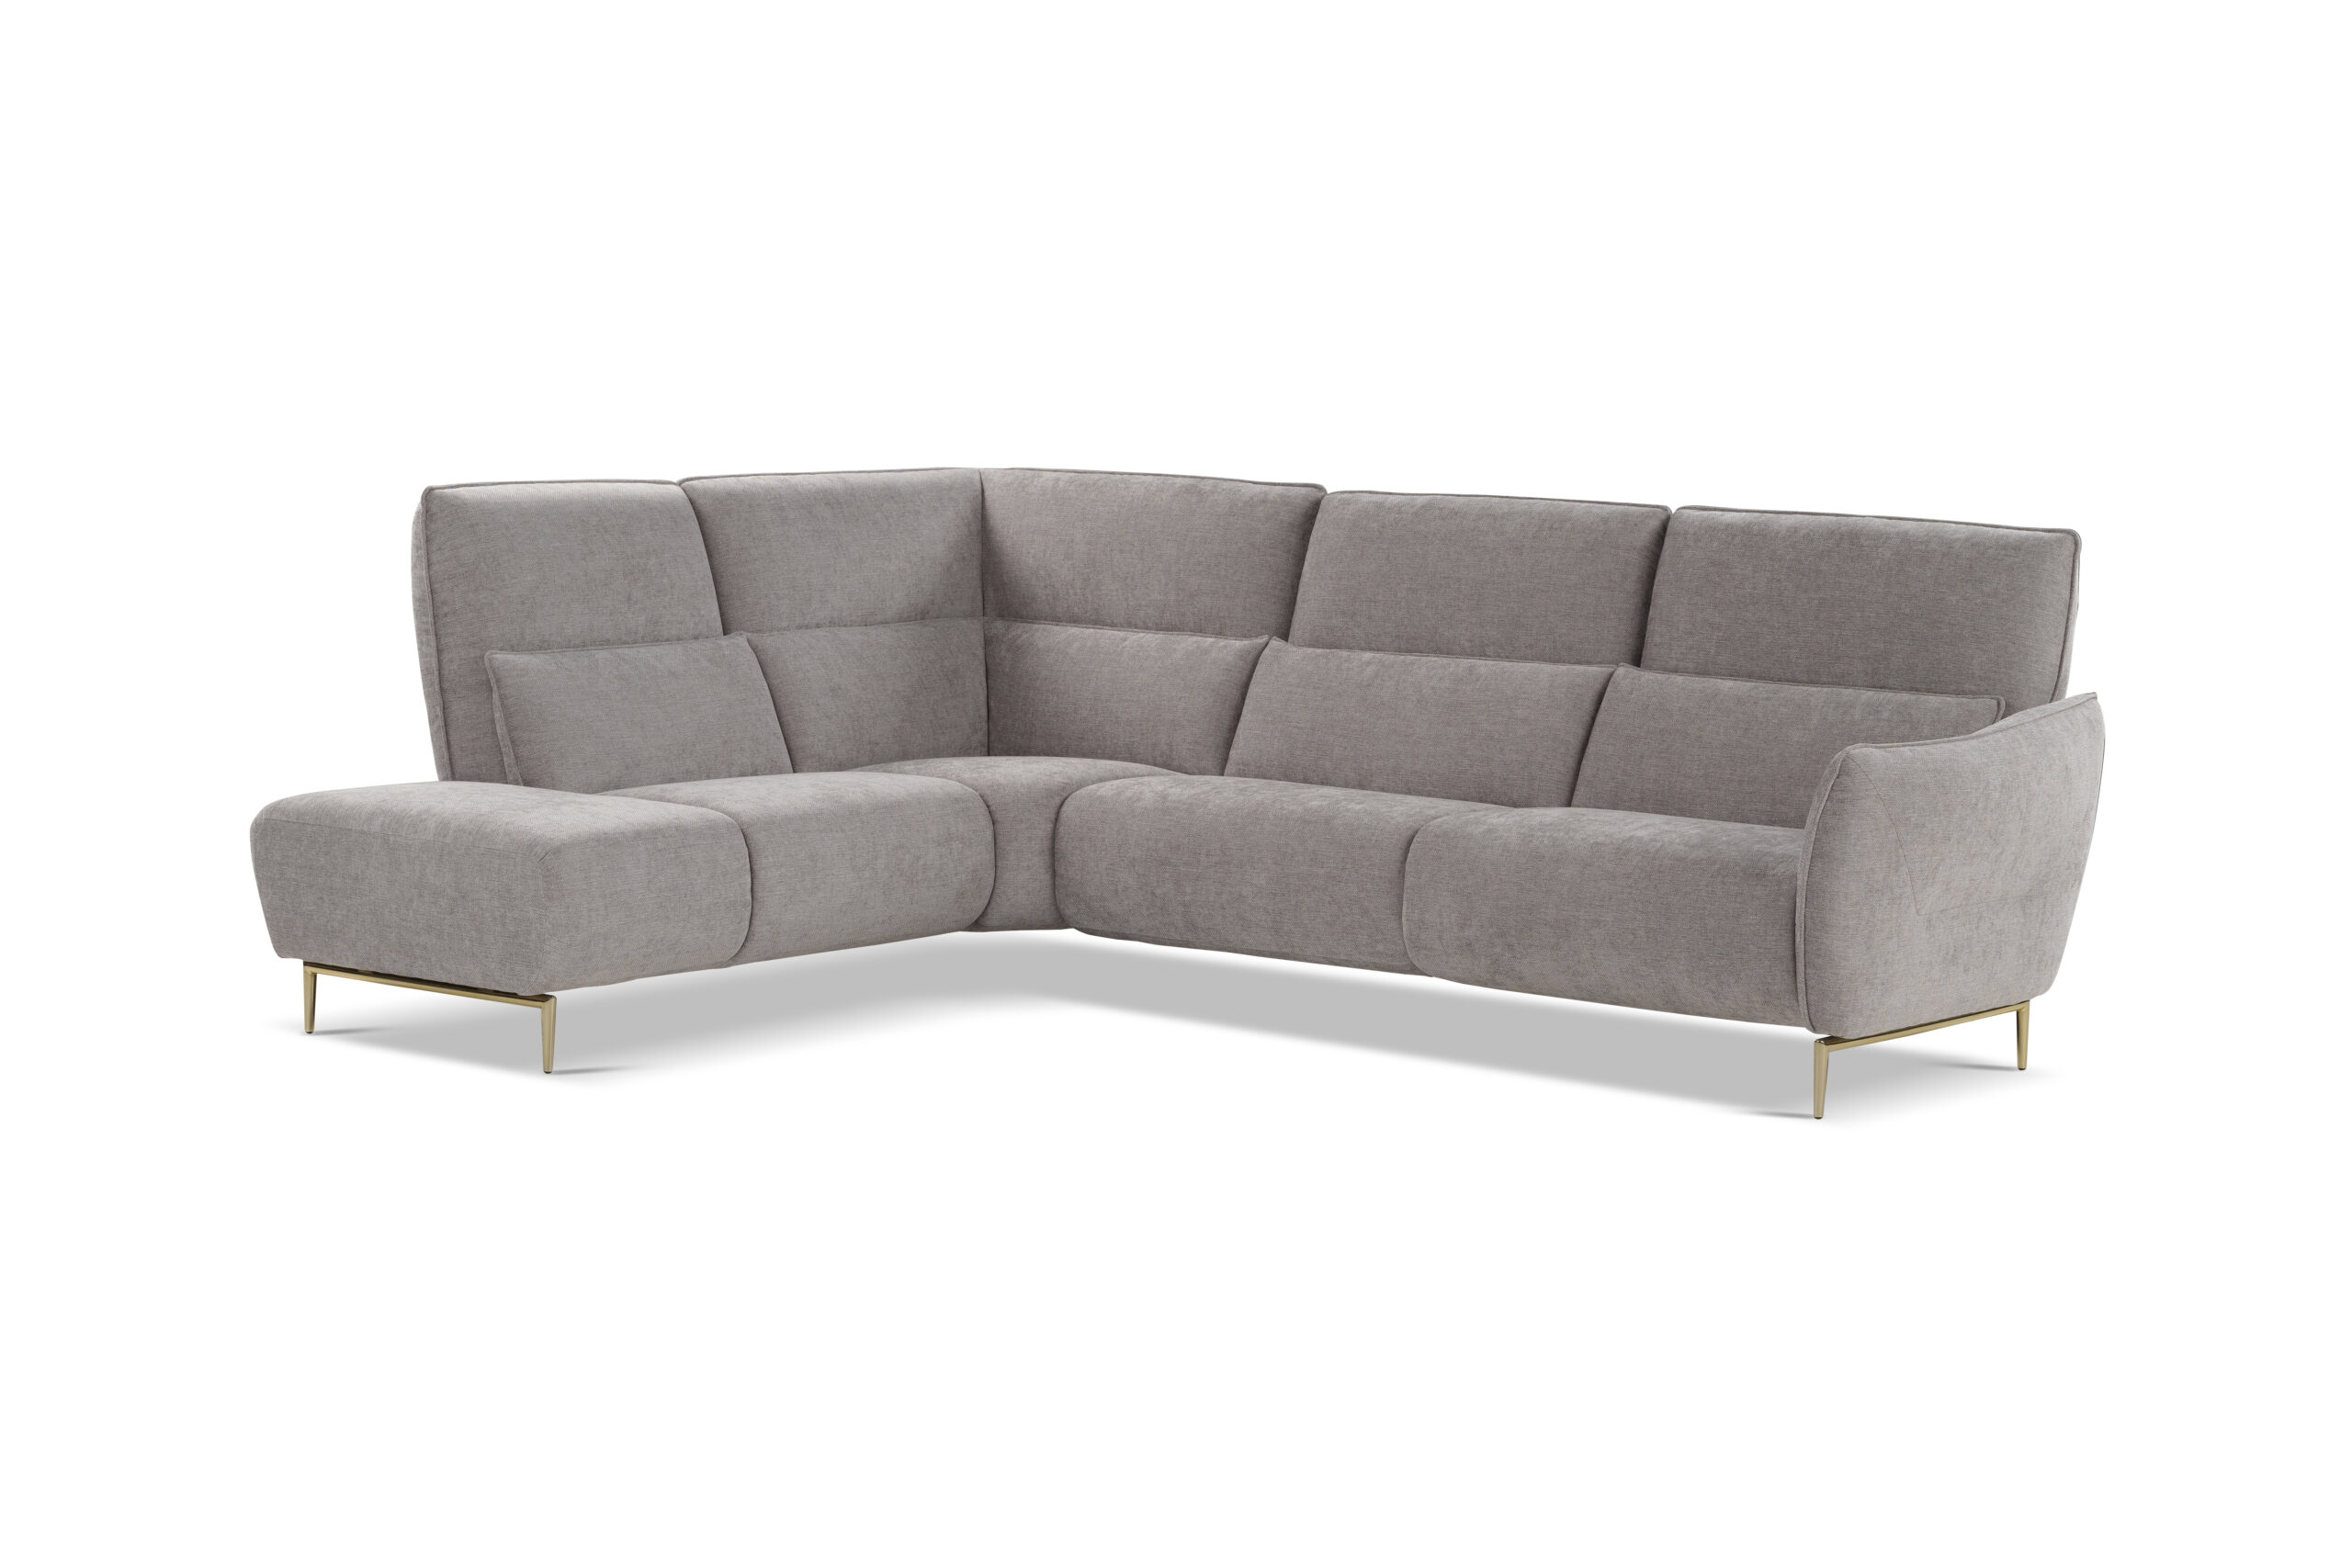 Divani Nicoletti Home relax recliner sofa divani letto presso Marinelli Design Group